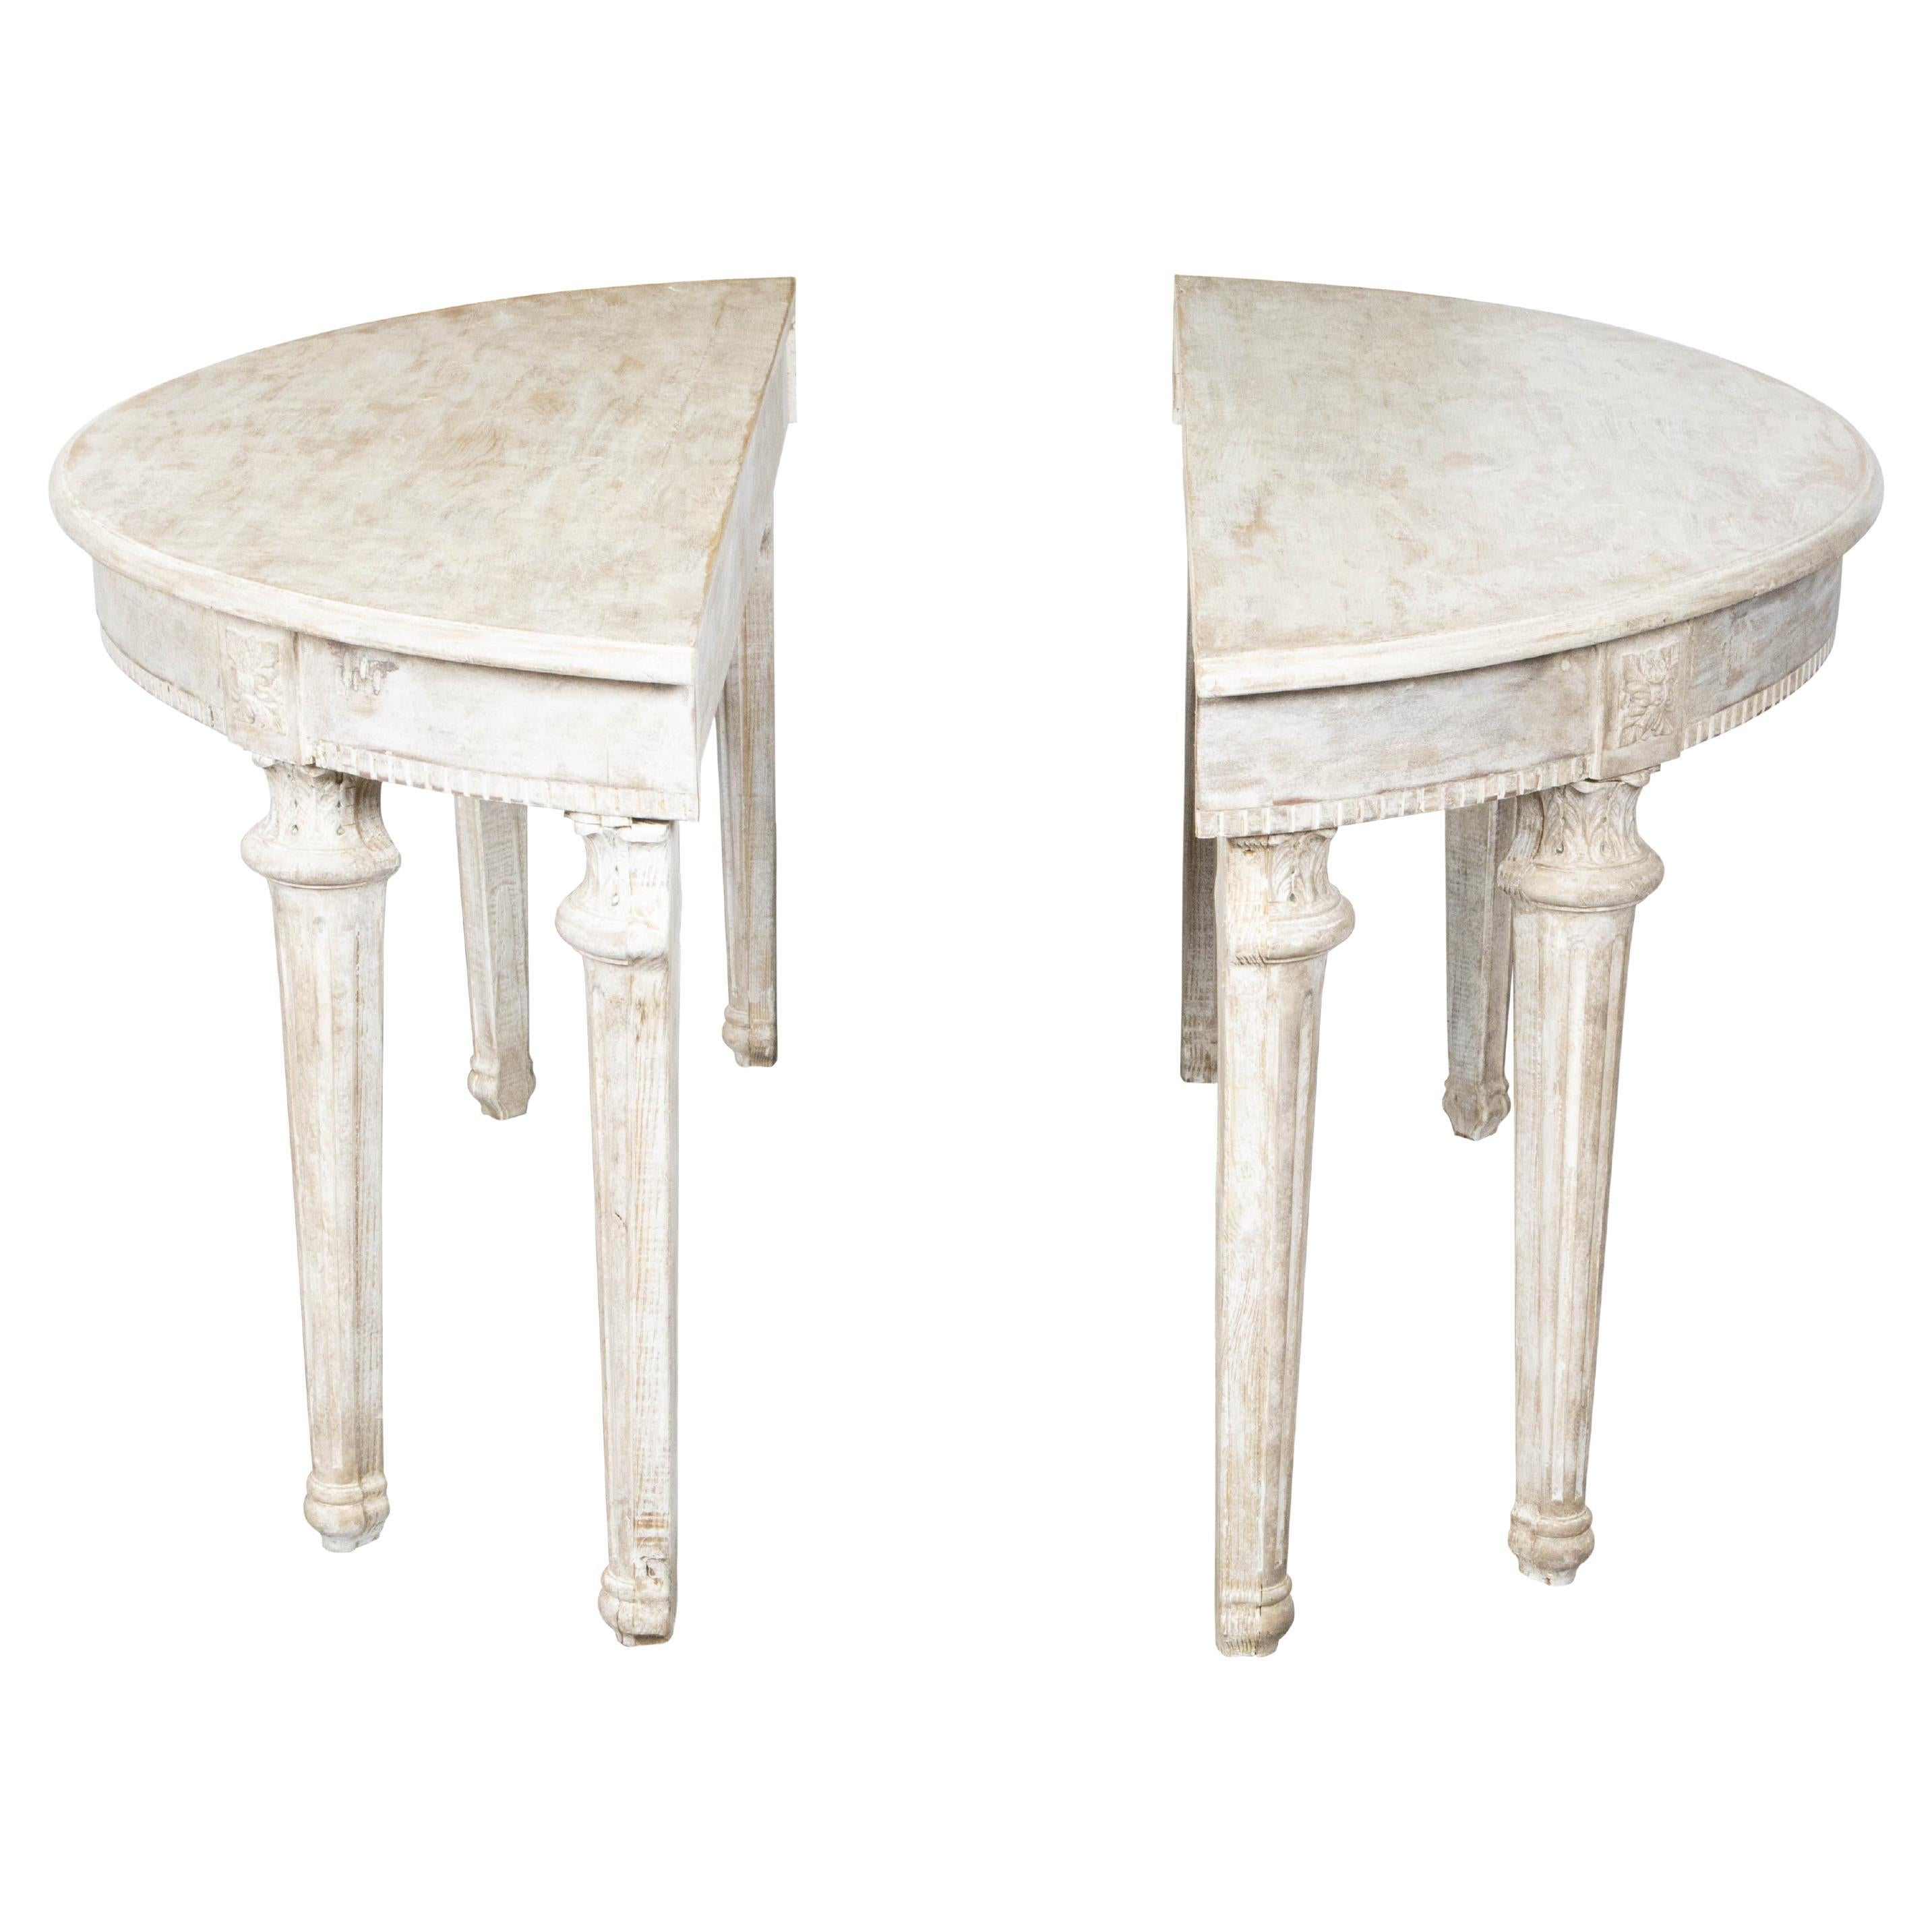 Paire de tables démilunies de style néoclassique français des années 1880 avec décor sculpté